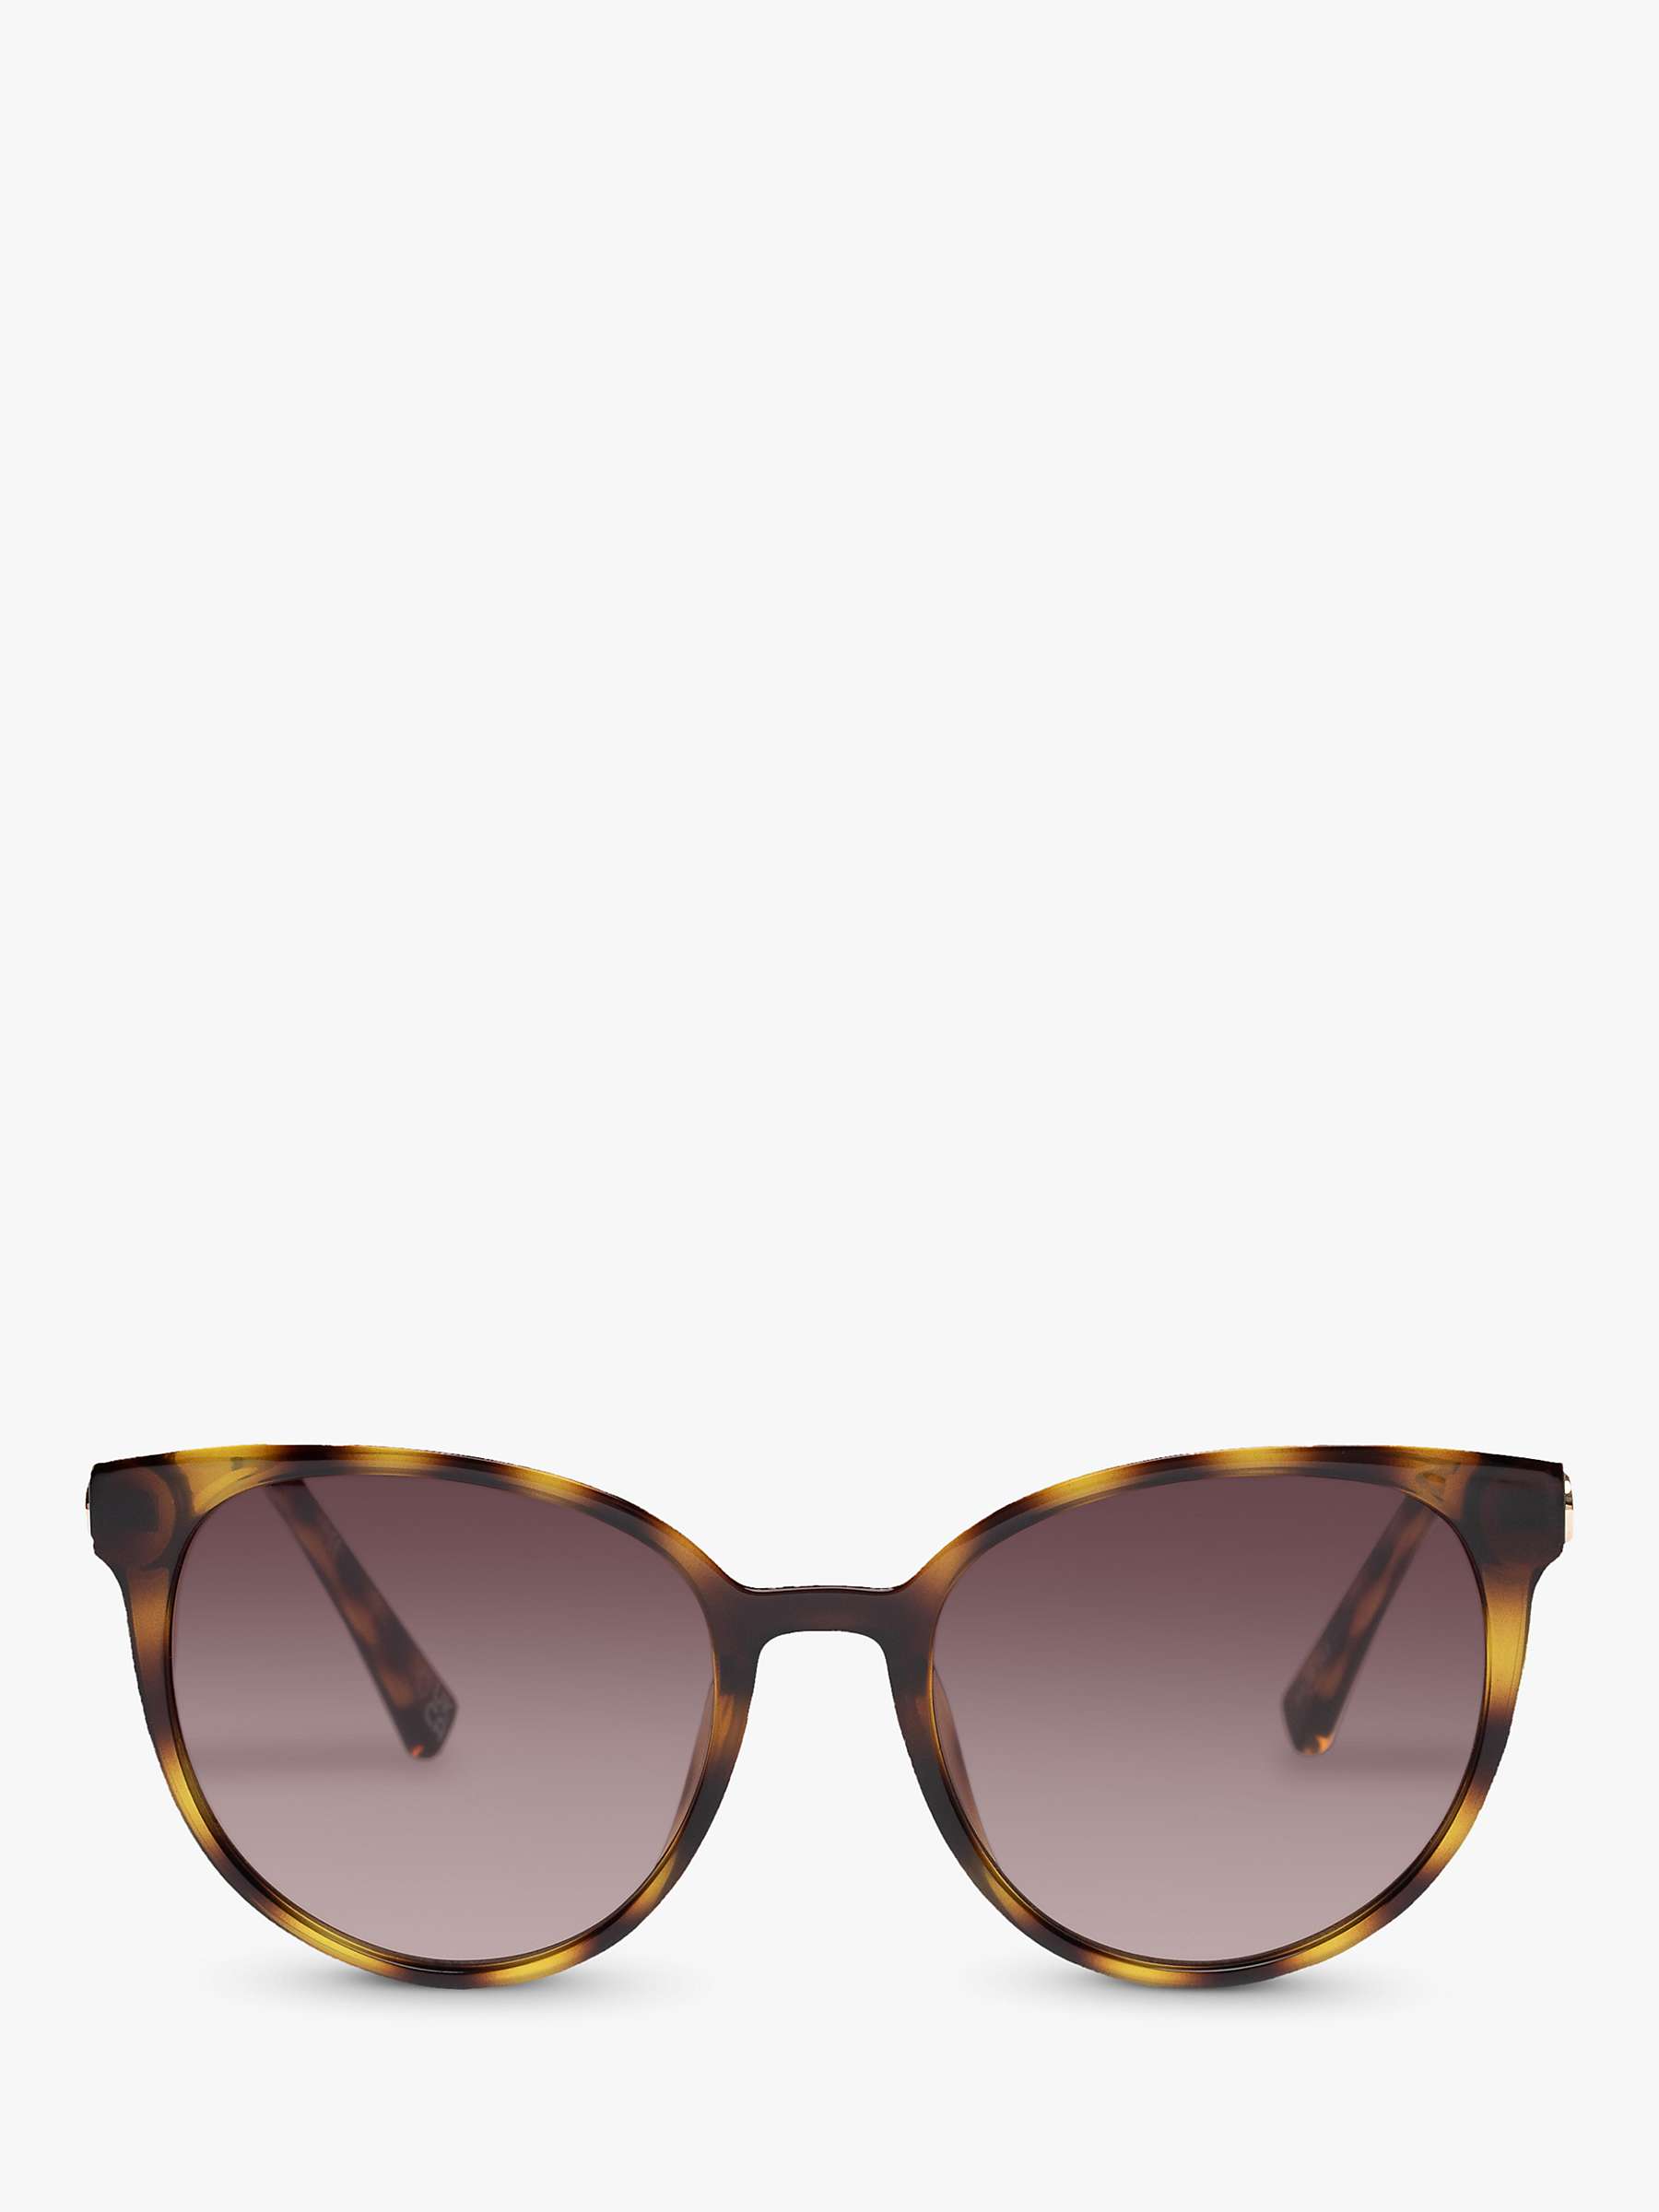 Buy Le Specs L5000172 Women's Contention Oval Sunglasses, Tortoise/Brown Gradient Online at johnlewis.com